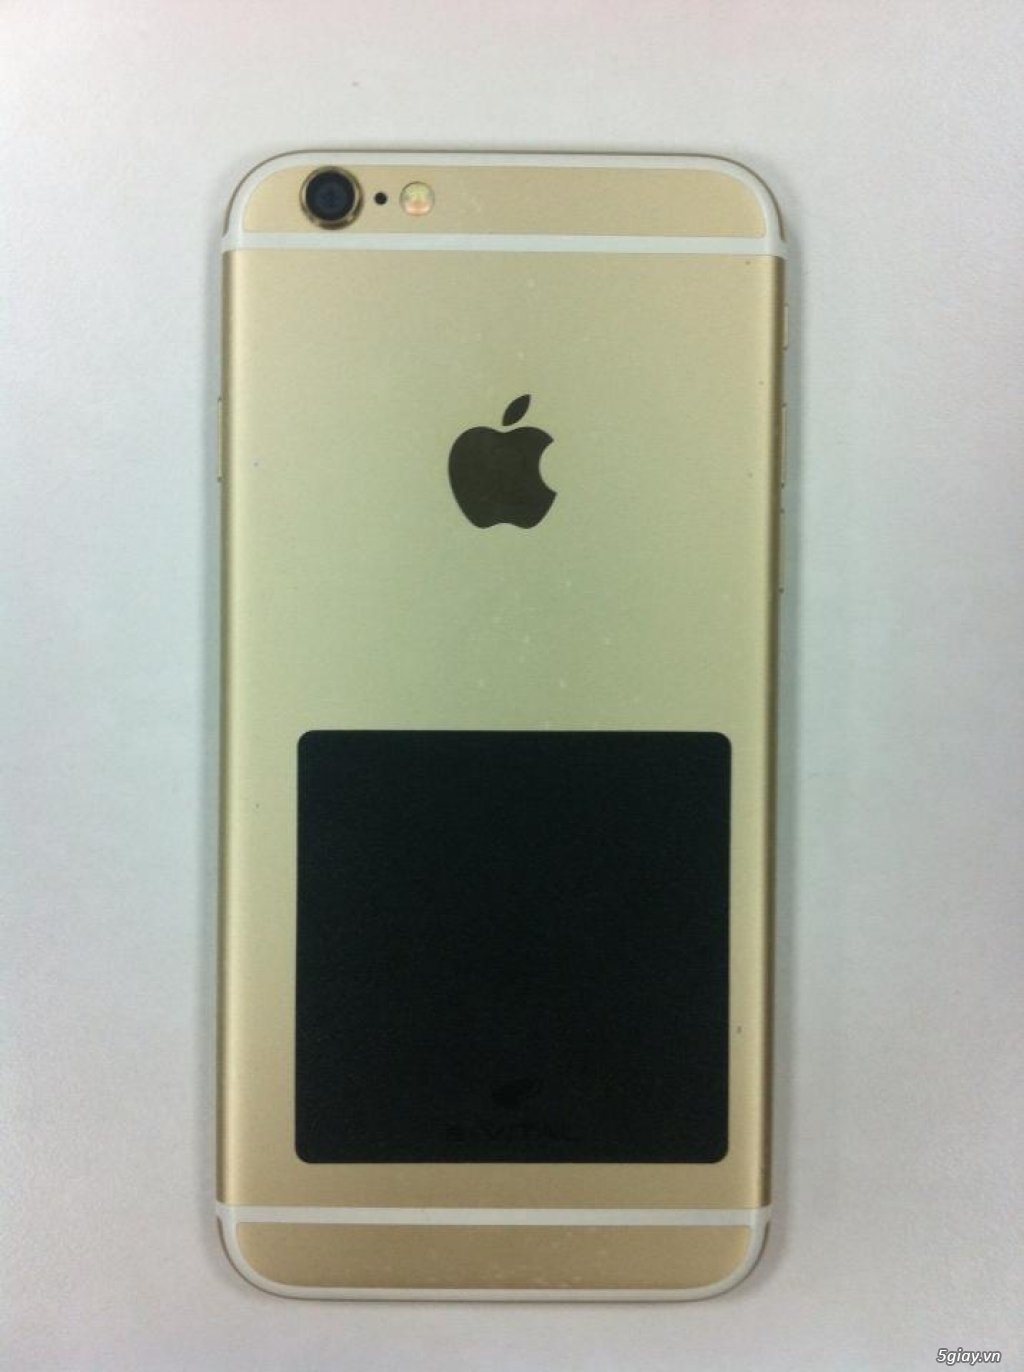 ĐT iPhone 6, 16GB (Vàng) - Lock Nhật - Hàng 99% - 1